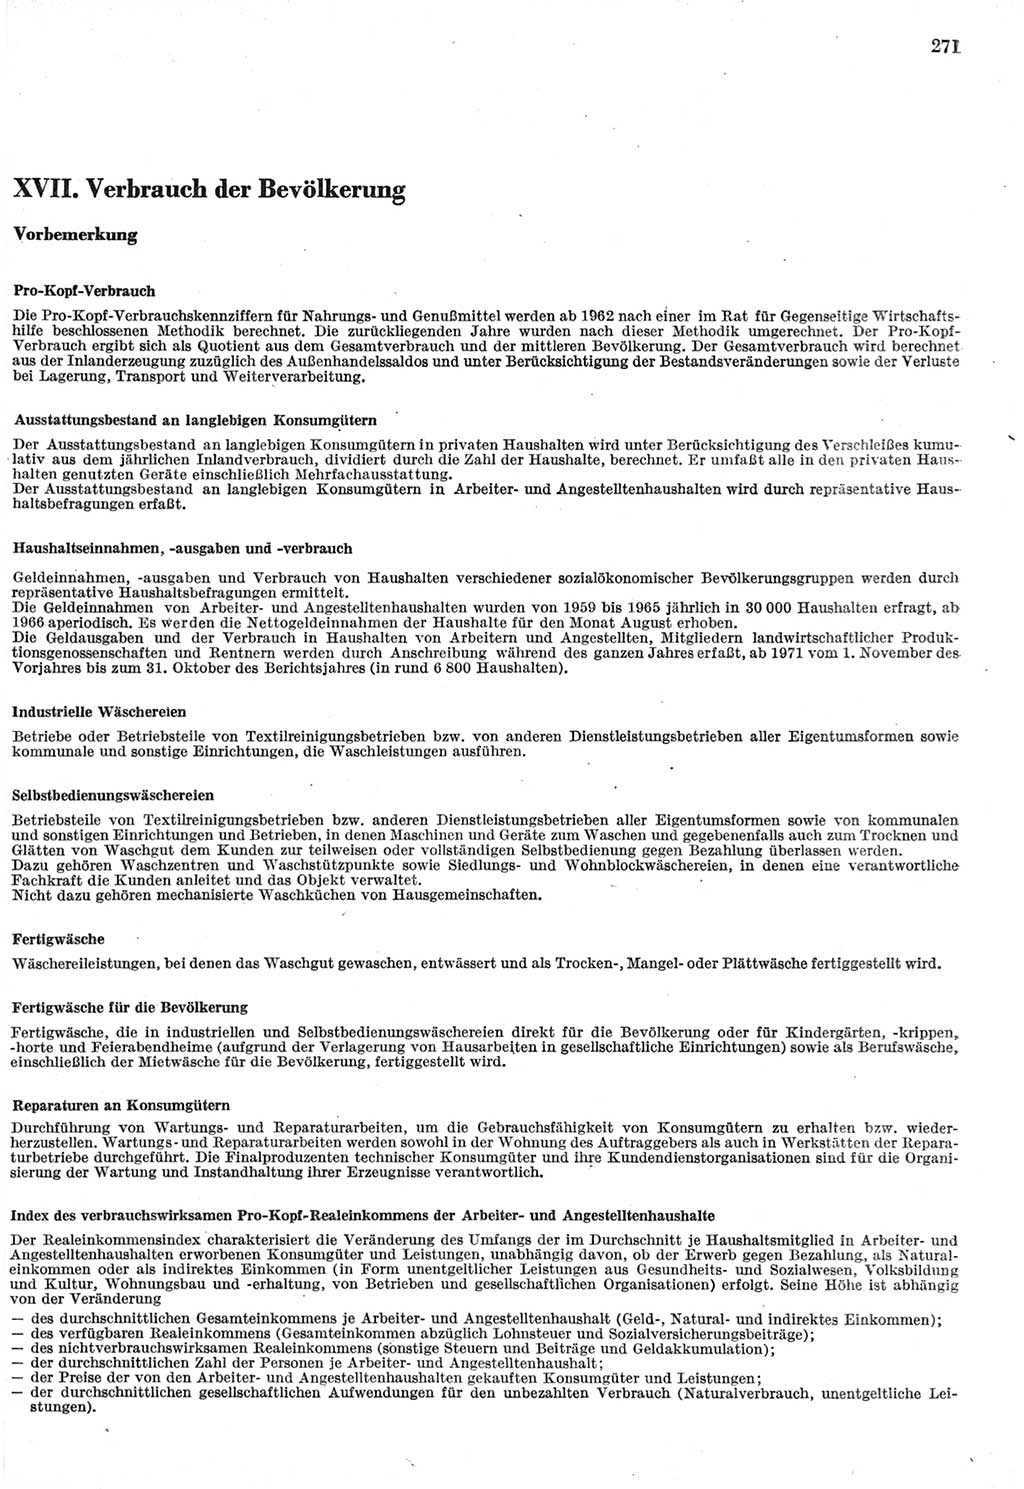 Statistisches Jahrbuch der Deutschen Demokratischen Republik (DDR) 1980, Seite 271 (Stat. Jb. DDR 1980, S. 271)